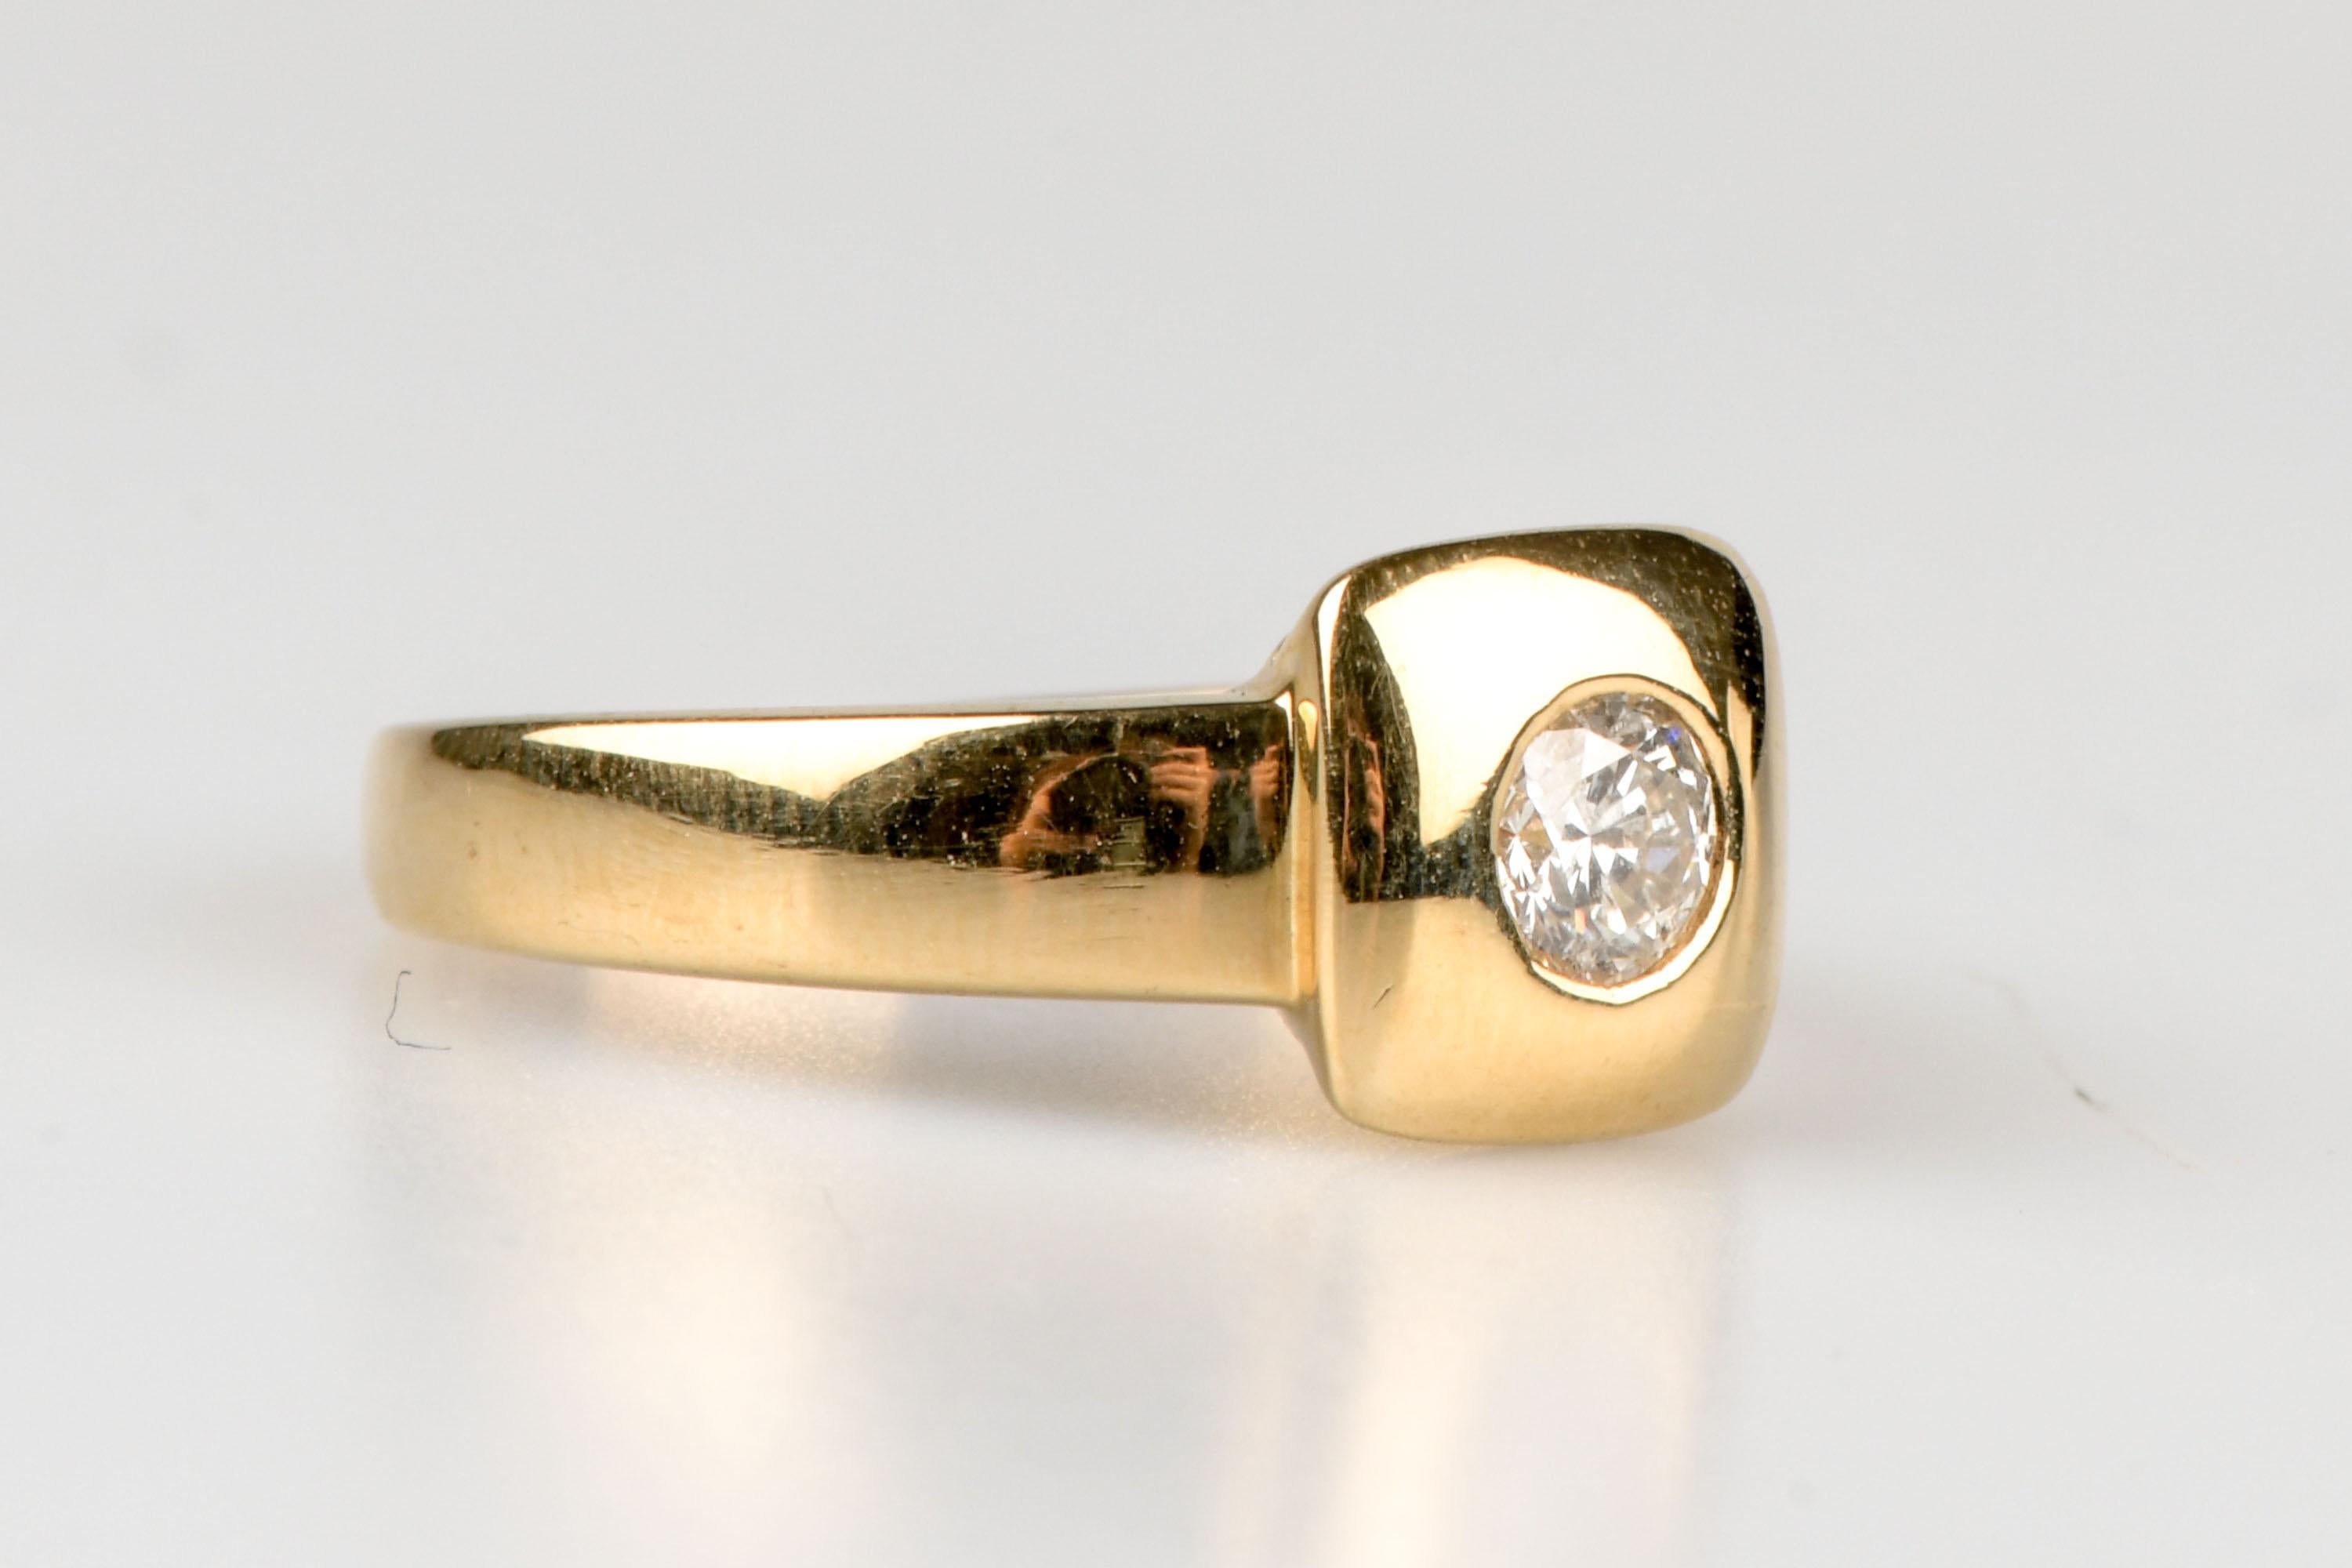 ring aus 18 Karat Gelbgold mit 1 runden Diamanten im Brillantschliff von 0,40 Karat.               

Qualität der Diamanten
Farbe: H
Klarheit: VS

Gewicht: 3,50 gr.

Größe : EU : 50 - ES/IT : 10 - US : 5.5

Abmessungen: 0,84 x 0,84 x 0,21